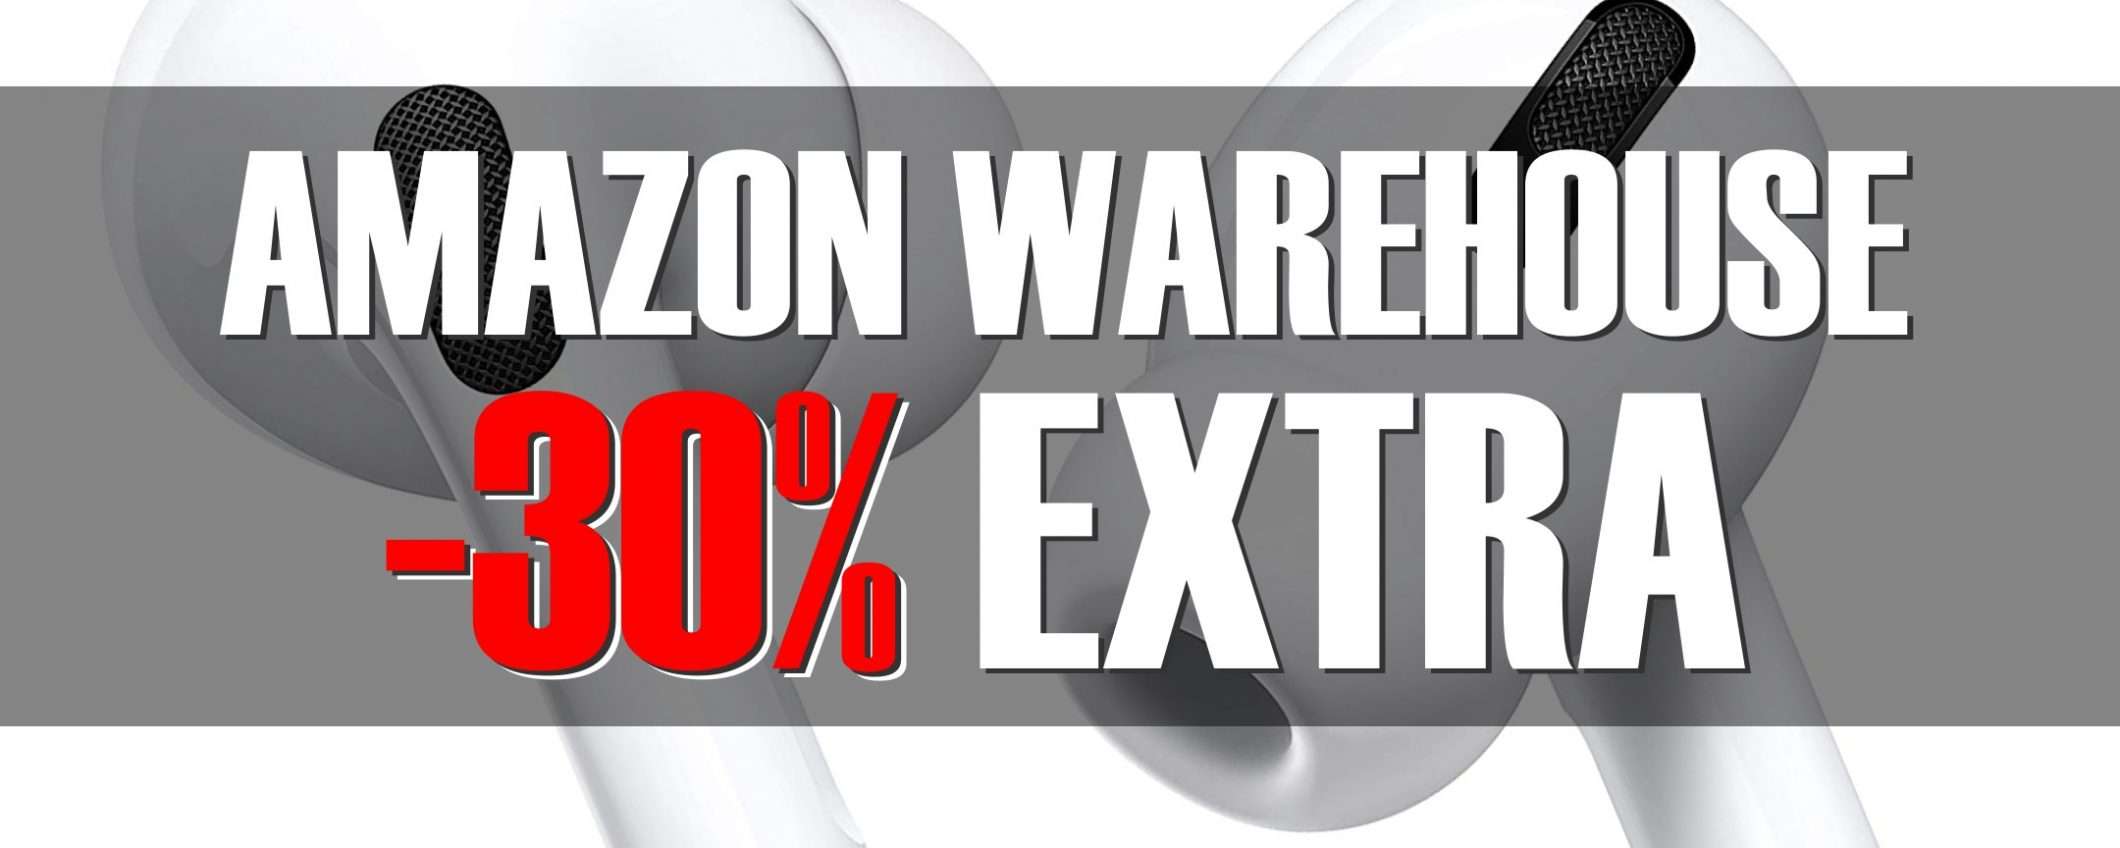 Amazon Warehouse, -30% da urlo: come approfittarne